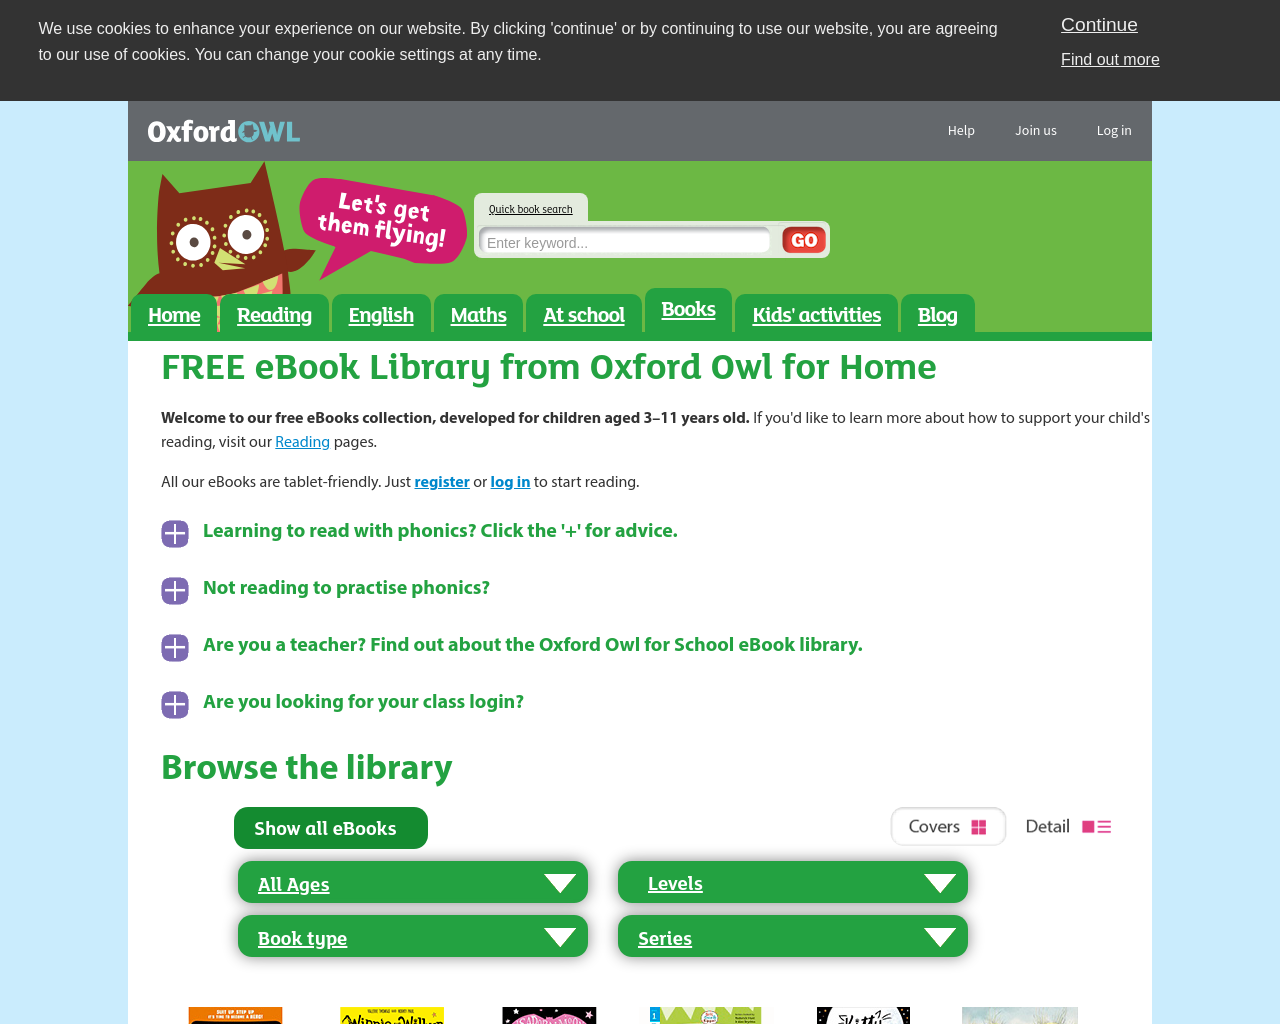 Oxford Owls